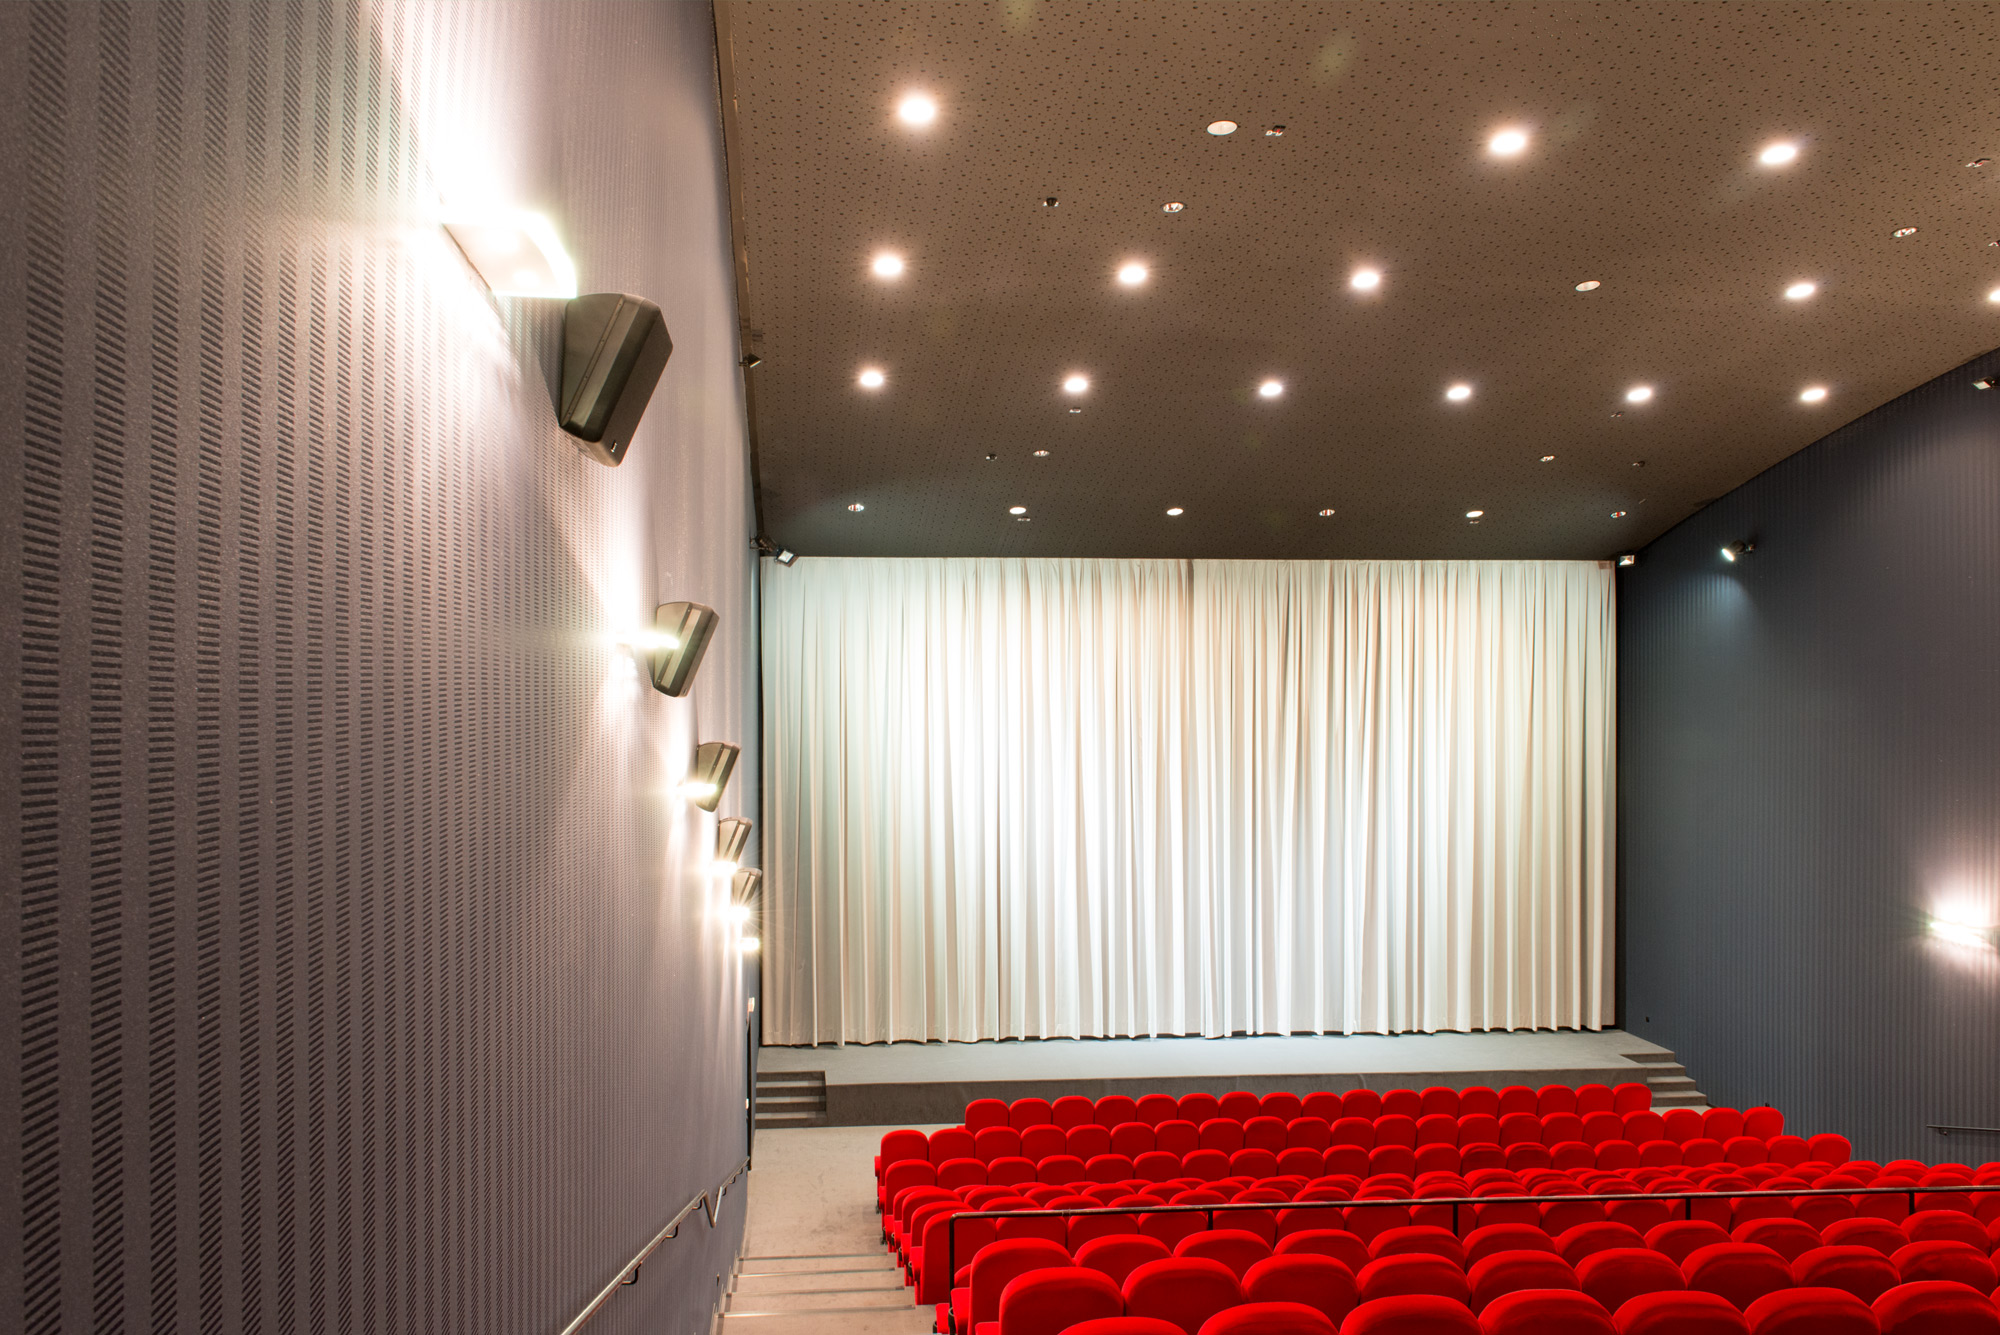 Kino 3 mit 309 Plätzen, 100 qm großer Leinwand und Soundqualität nach THX-Norm